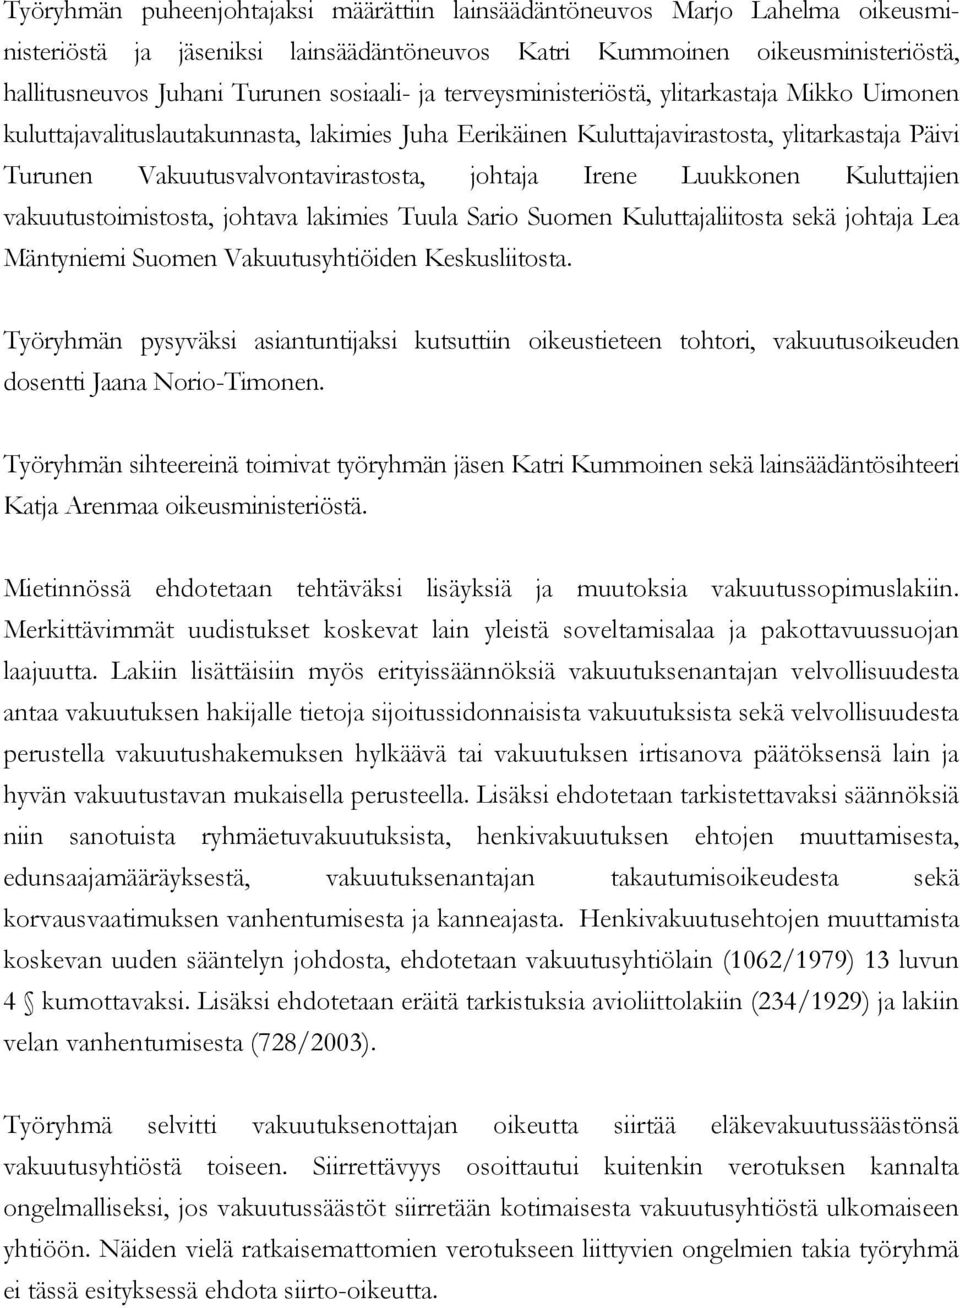 Luukkonen Kuluttajien vakuutustoimistosta, johtava lakimies Tuula Sario Suomen Kuluttajaliitosta sekä johtaja Lea Mäntyniemi Suomen Vakuutusyhtiöiden Keskusliitosta.